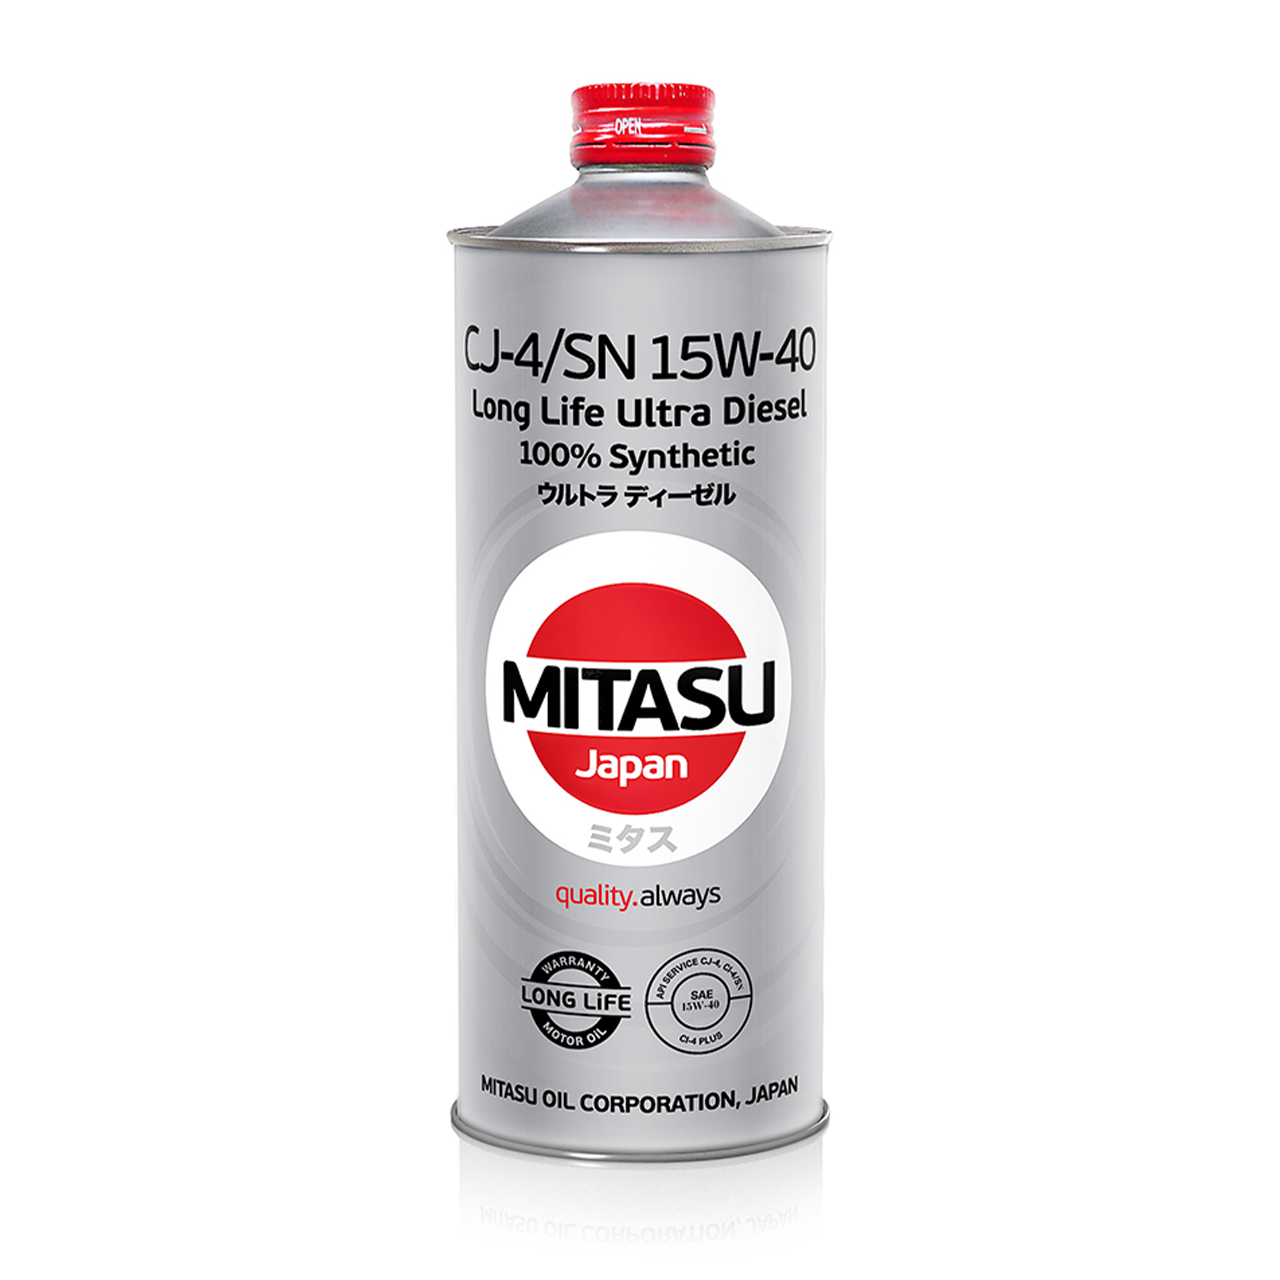 Купить запчасть MITASU - MJ2141 Масло моторное MITASU CJ-4/SN 15w40 1л синтетическое для дизельных двигателей MJ214 (1/20) Япония